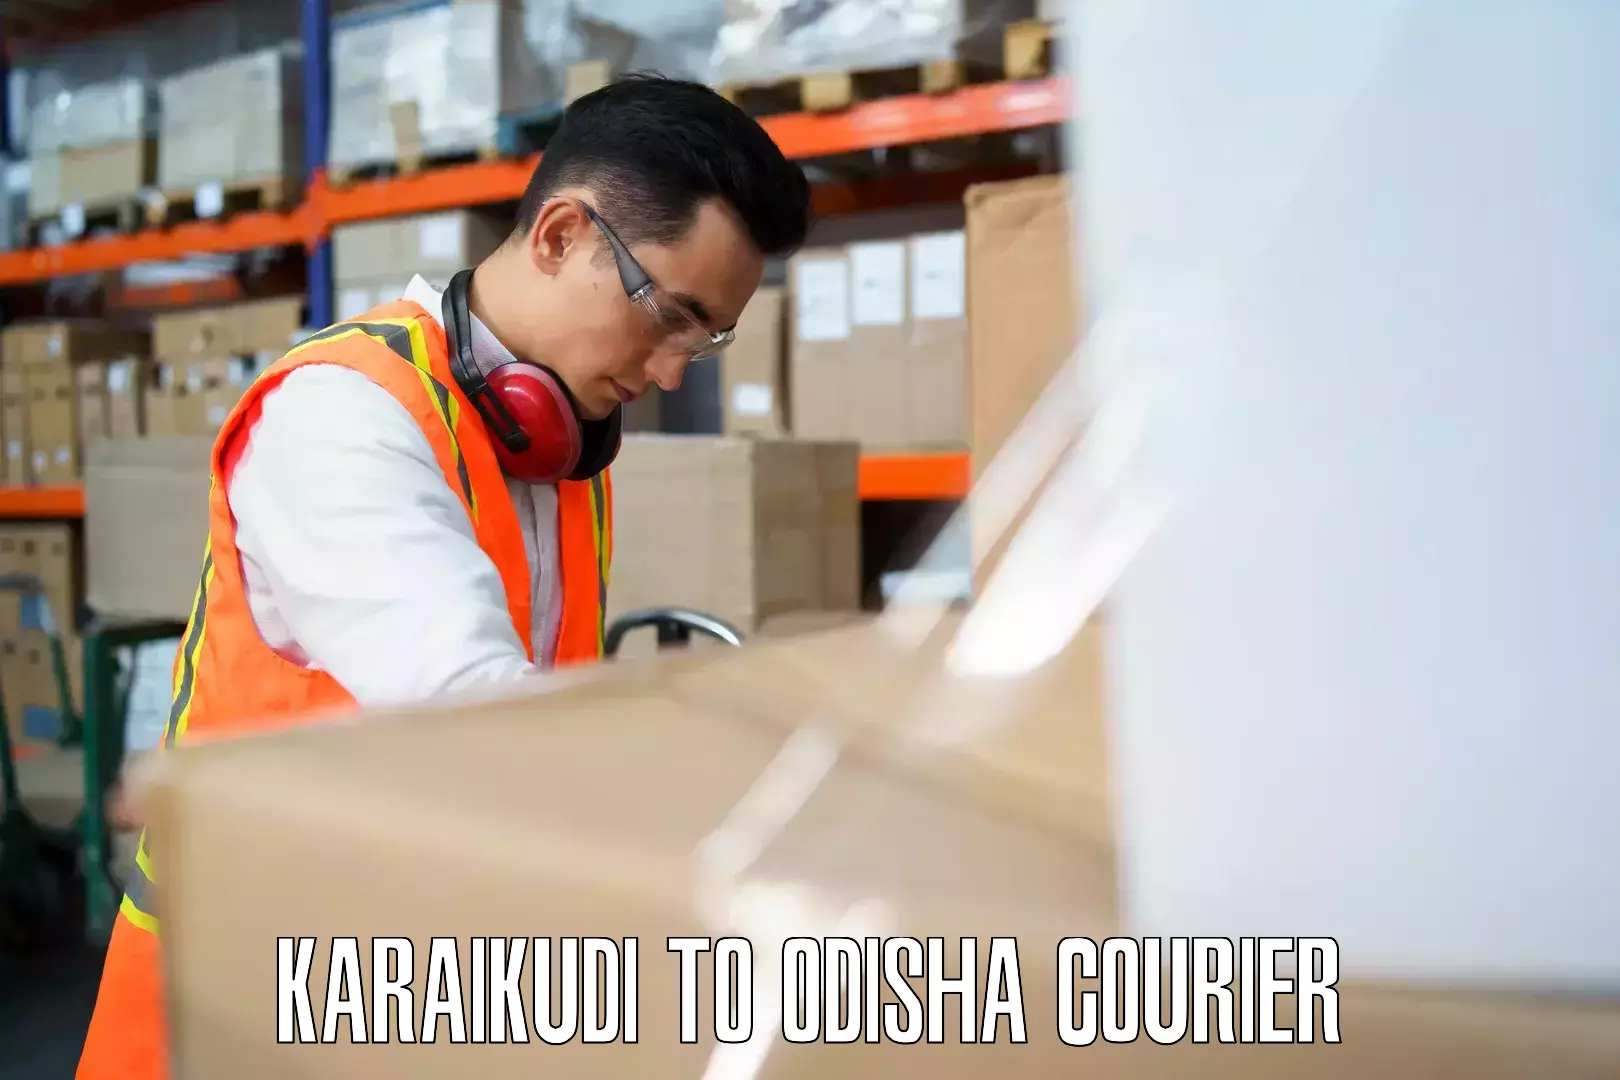 Single item baggage courier Karaikudi to Kalahandi